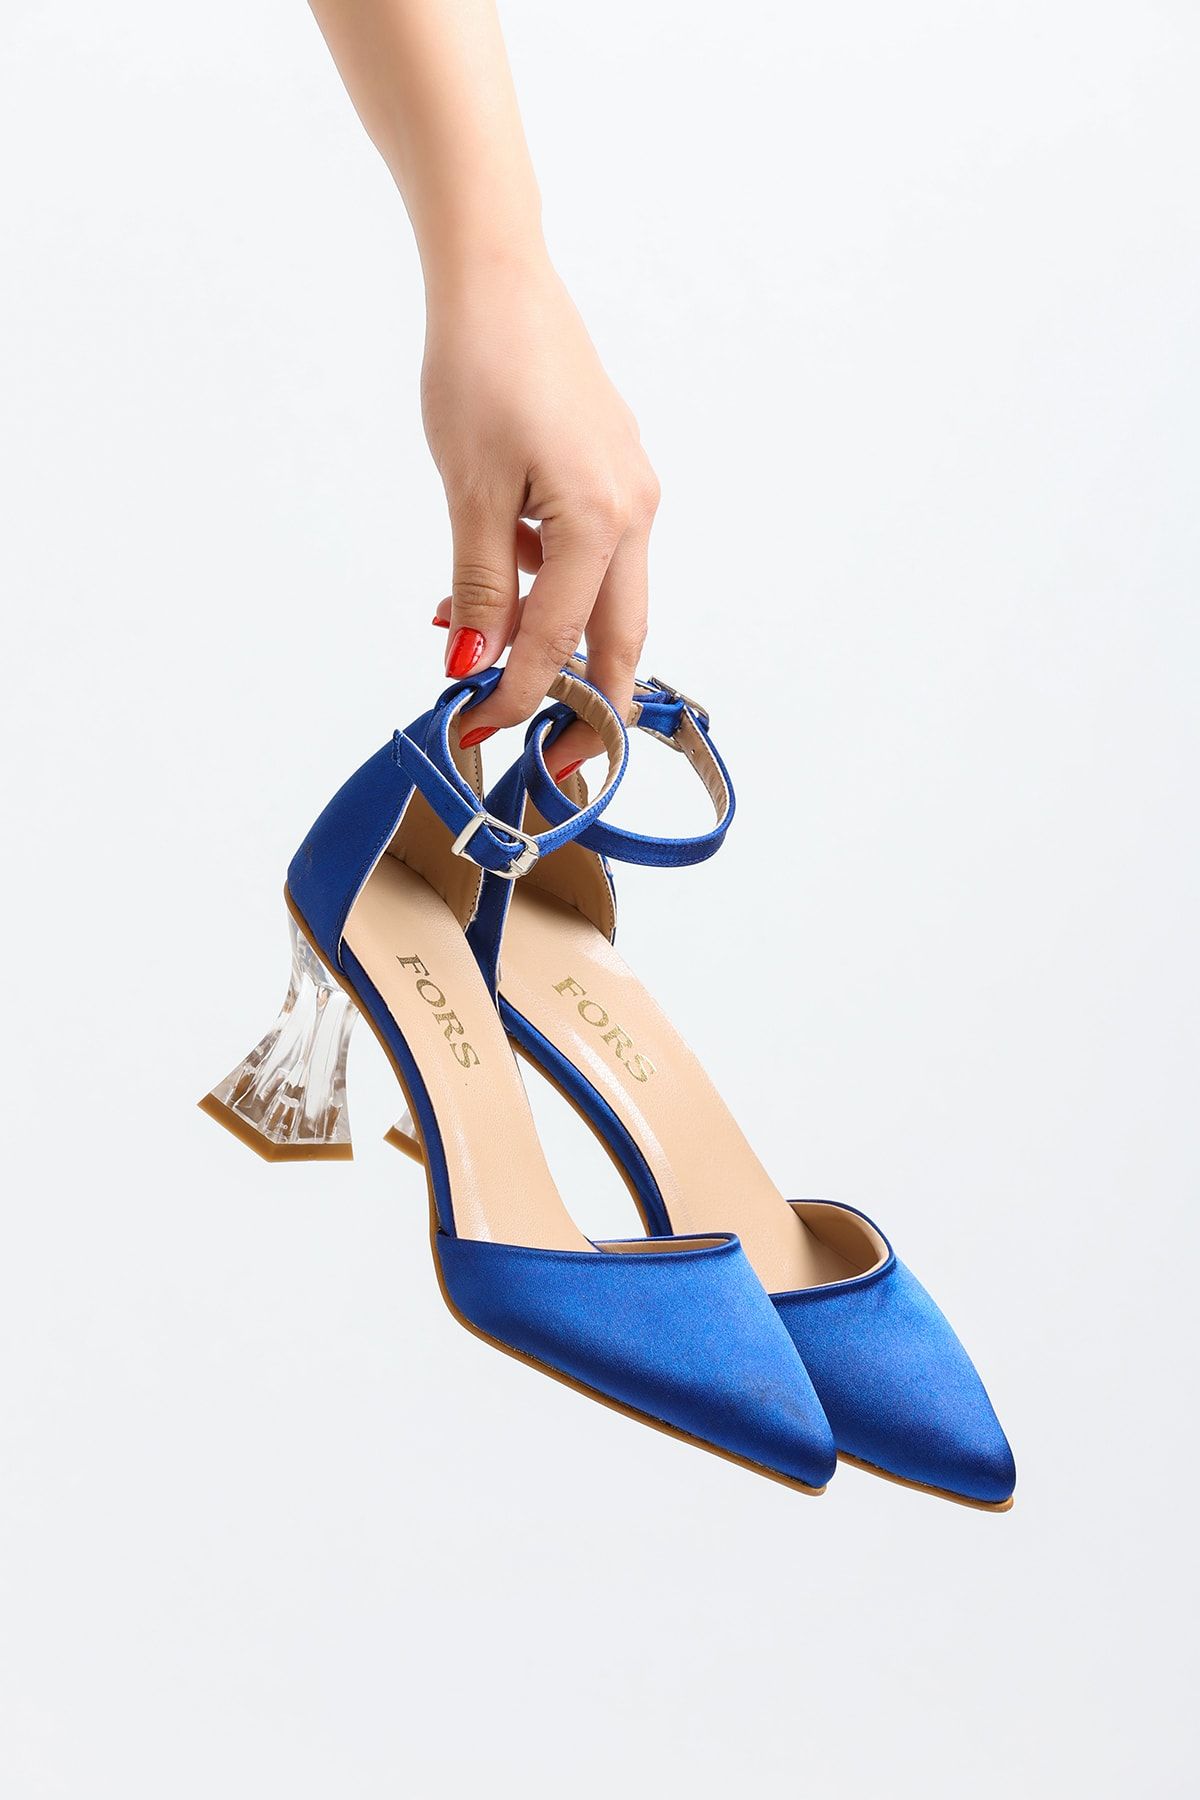 FORS SHOES Kadın Saks Mavi Saten Klasik Topuklu Ayakkabı 7,5 Cm